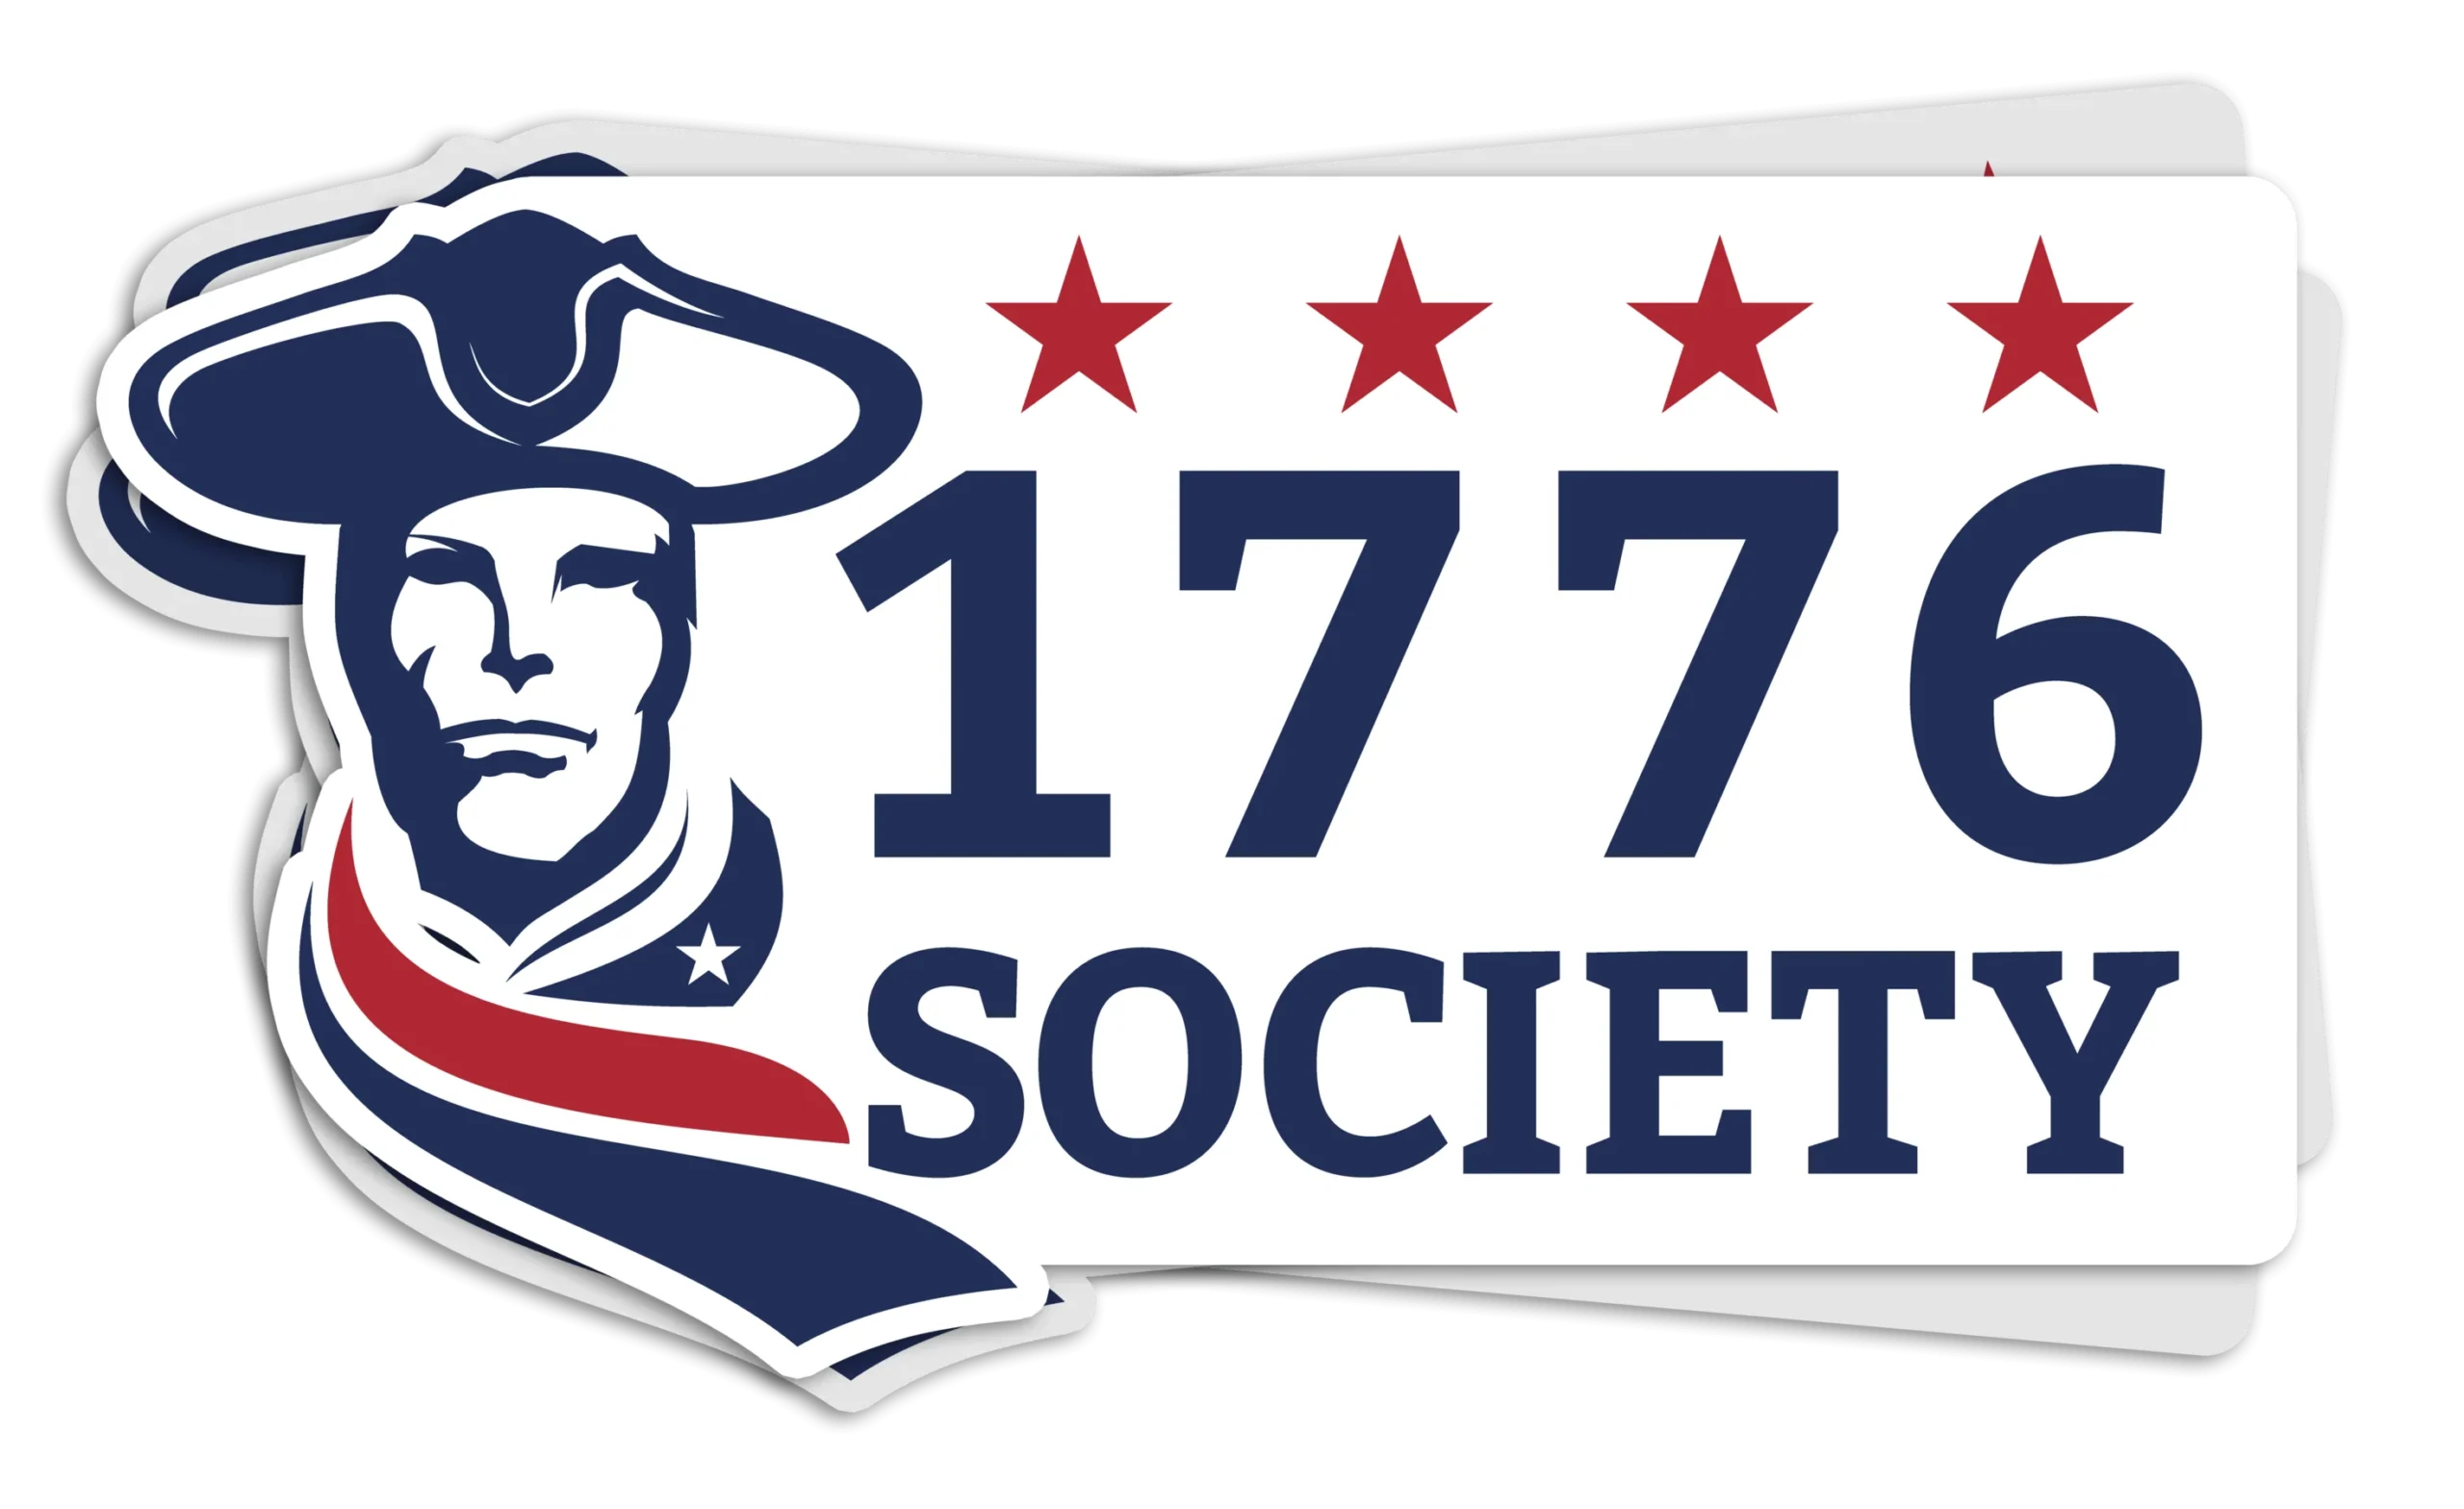 How To Cancel 1776 Society Membership?